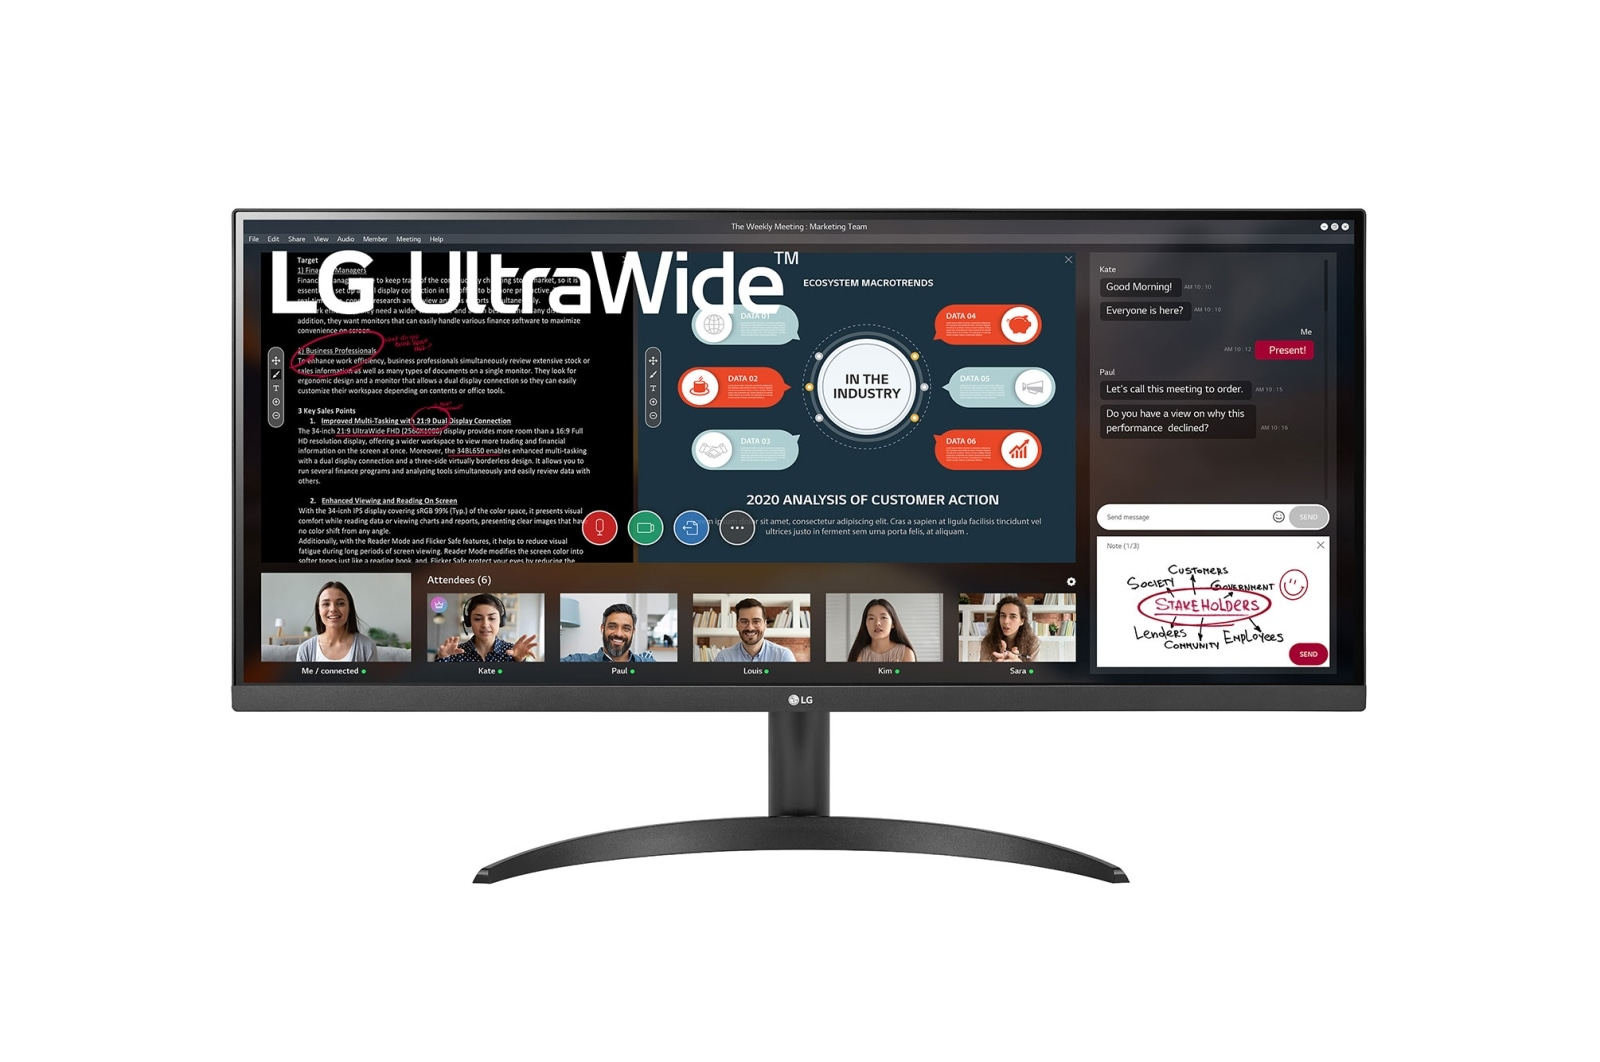 LG 34WP500-B computer monitor